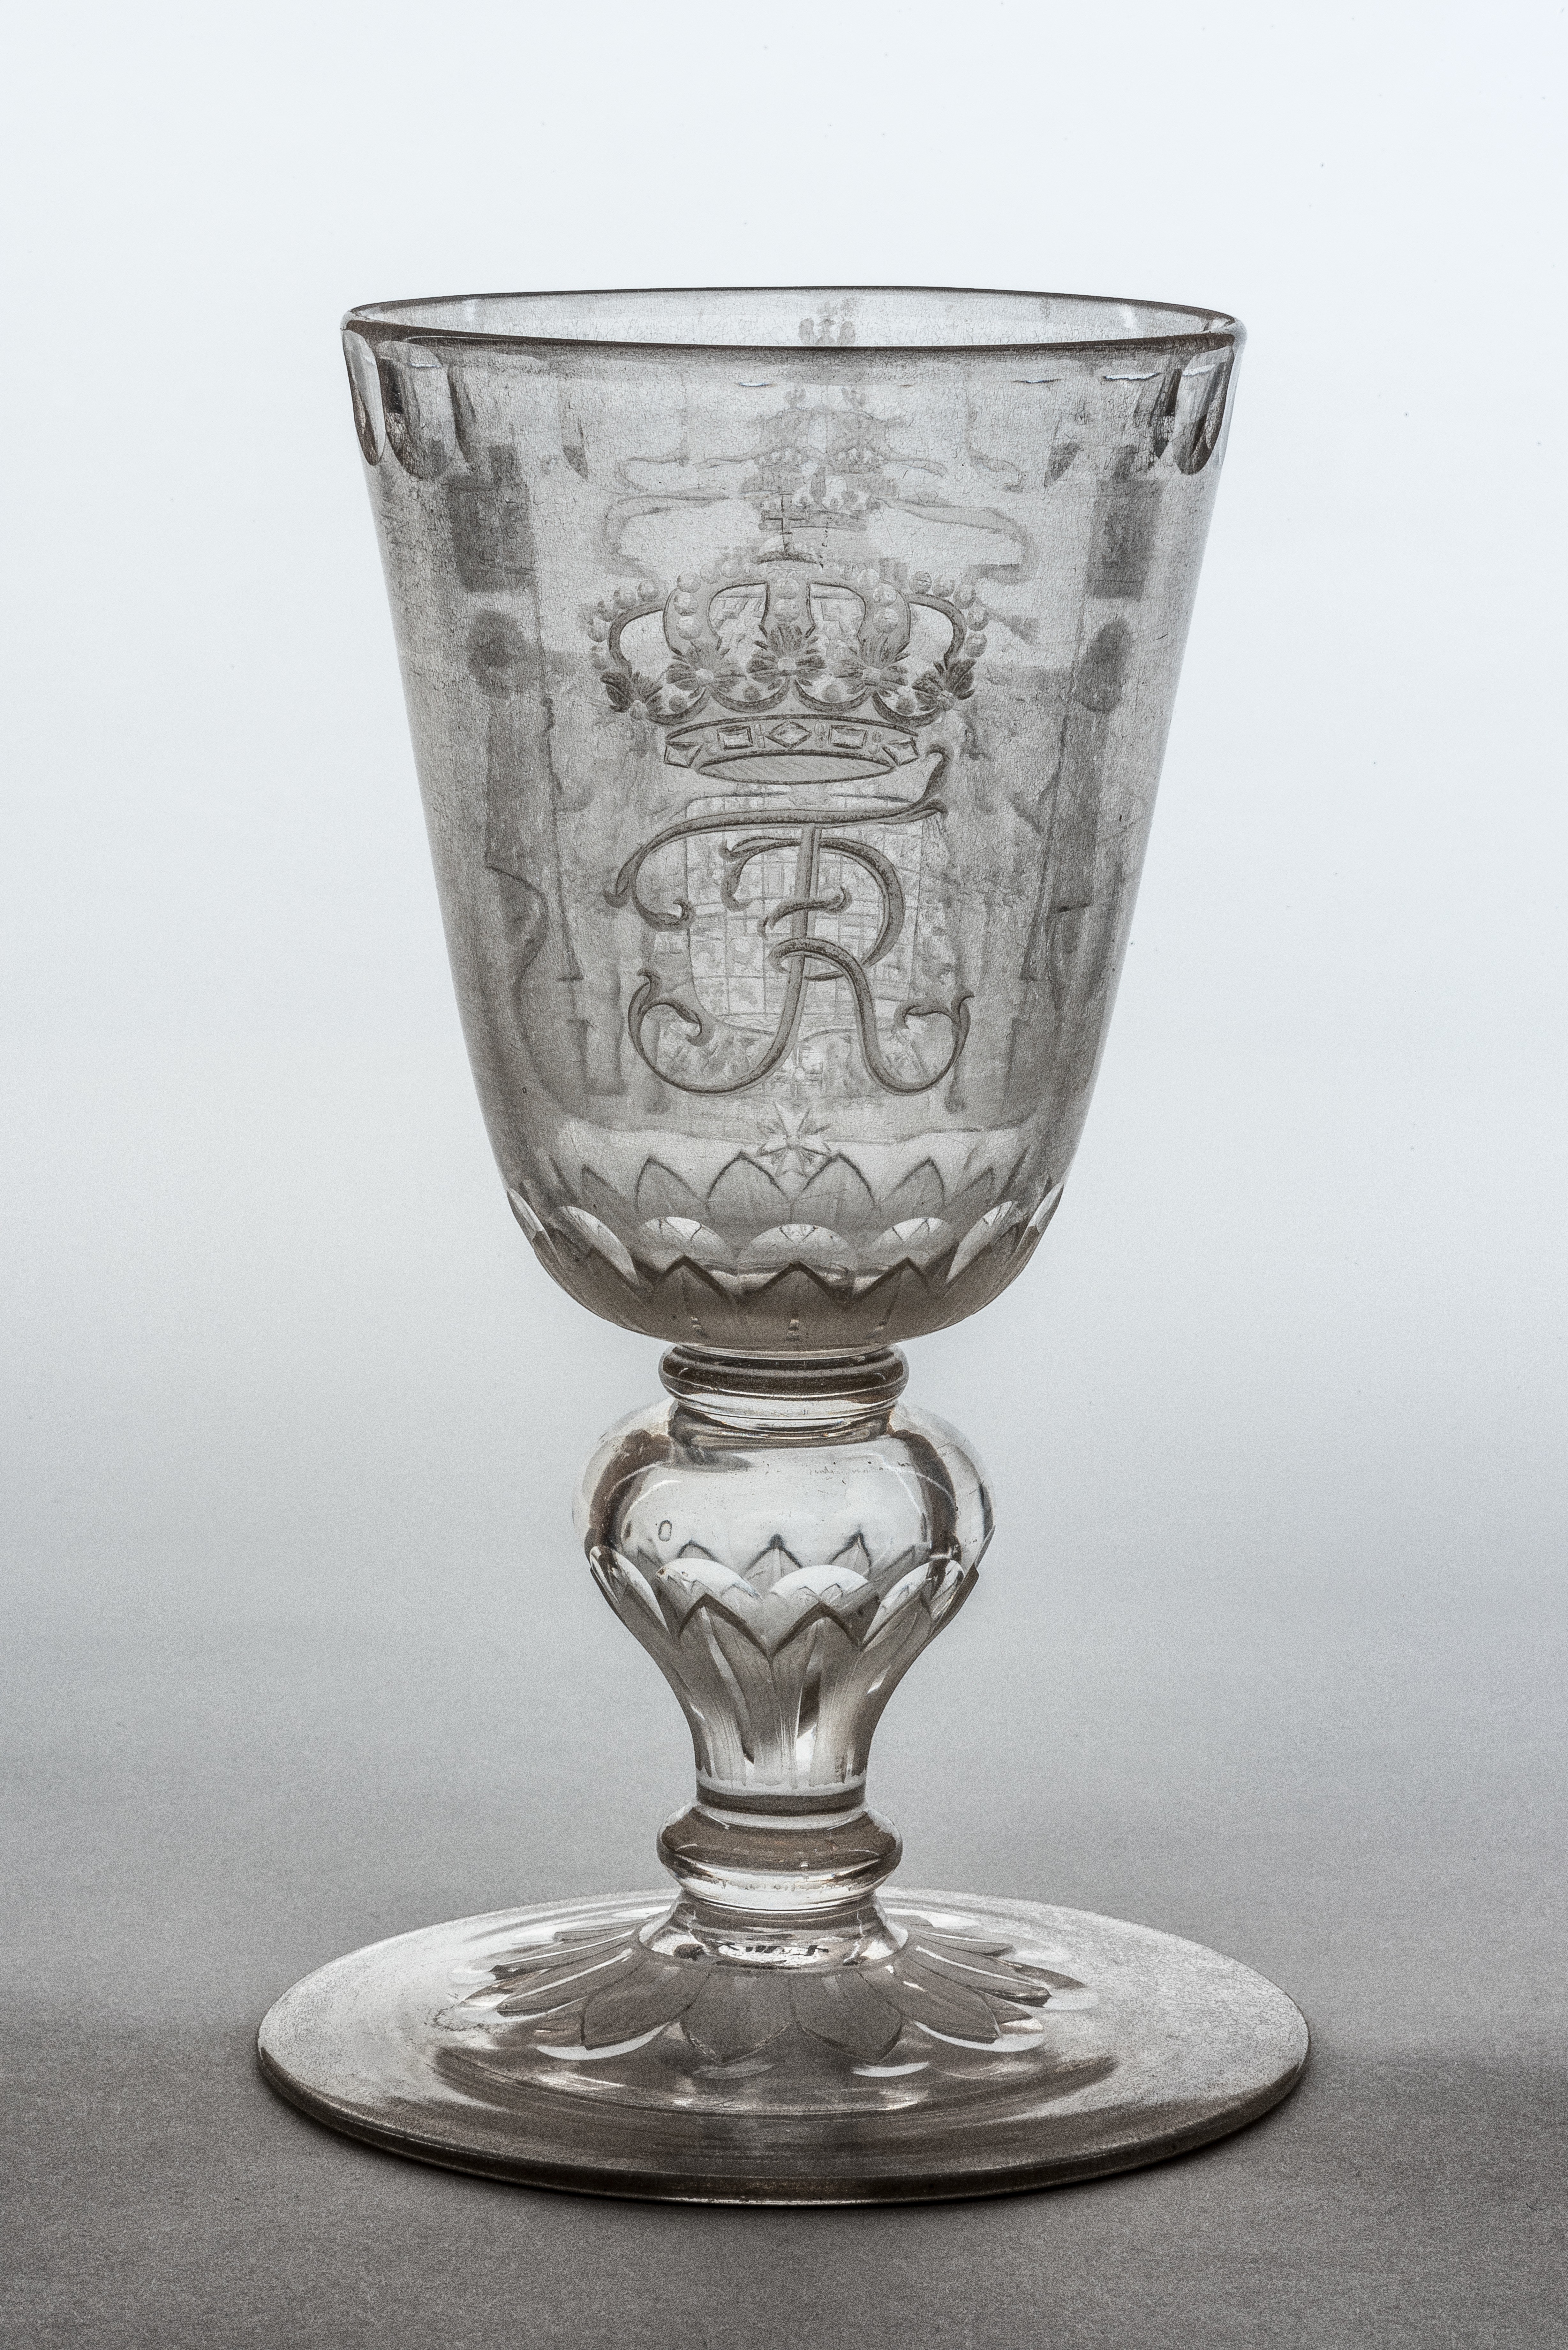 Pokal mit großem Preußischen Wappen und Monogramm FR, XIII 7. (Stiftung Preußische Schlösser und Gärten Berlin-Brandenburg CC BY-NC-SA)